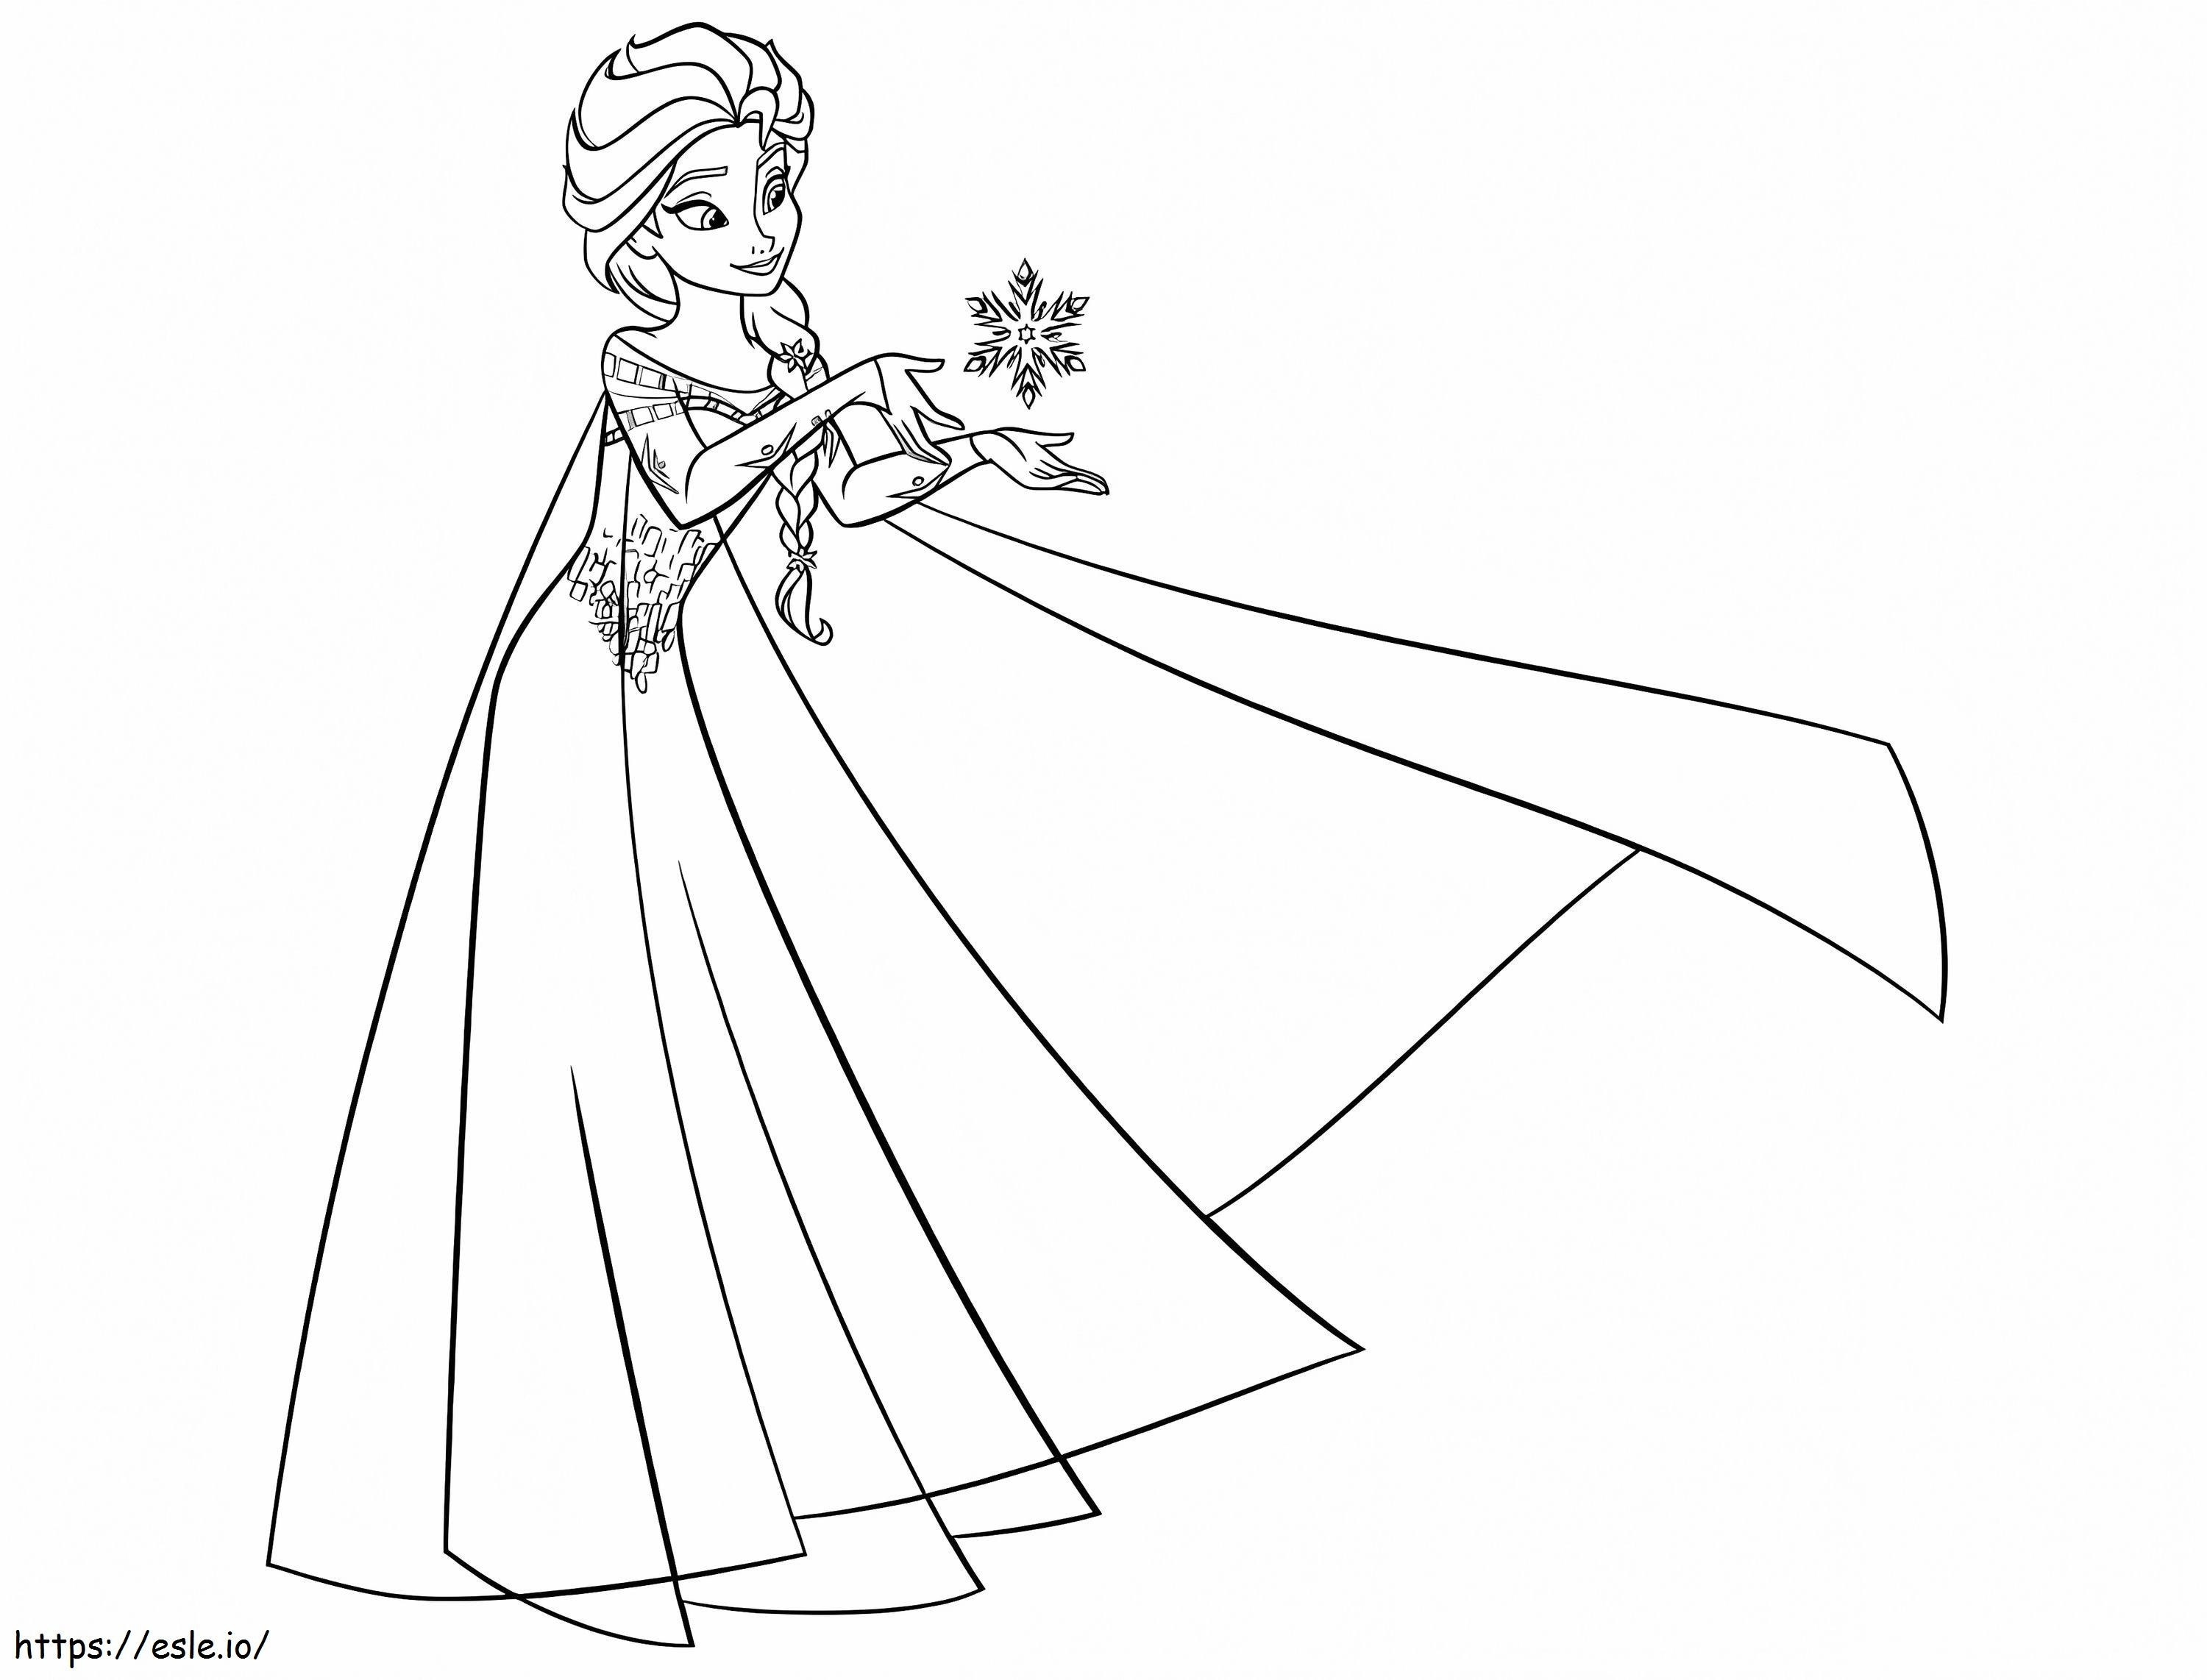 Elsa Z Płatkiem śniegu kolorowanka